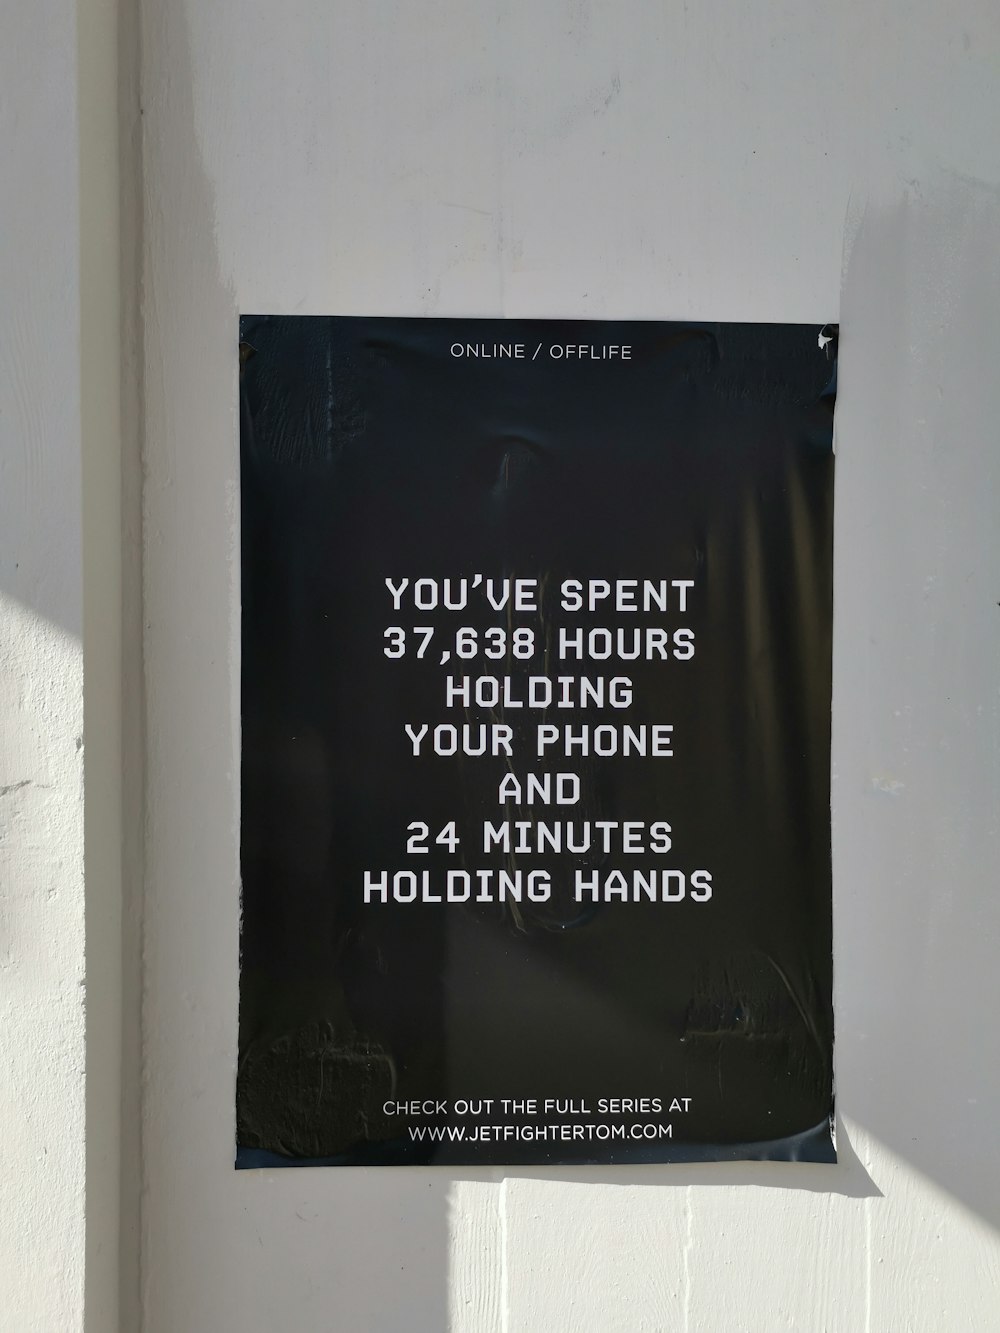 Hai trascorso 37.638 ore tenendo il telefono e 24 minuti tenendo la carta per mano